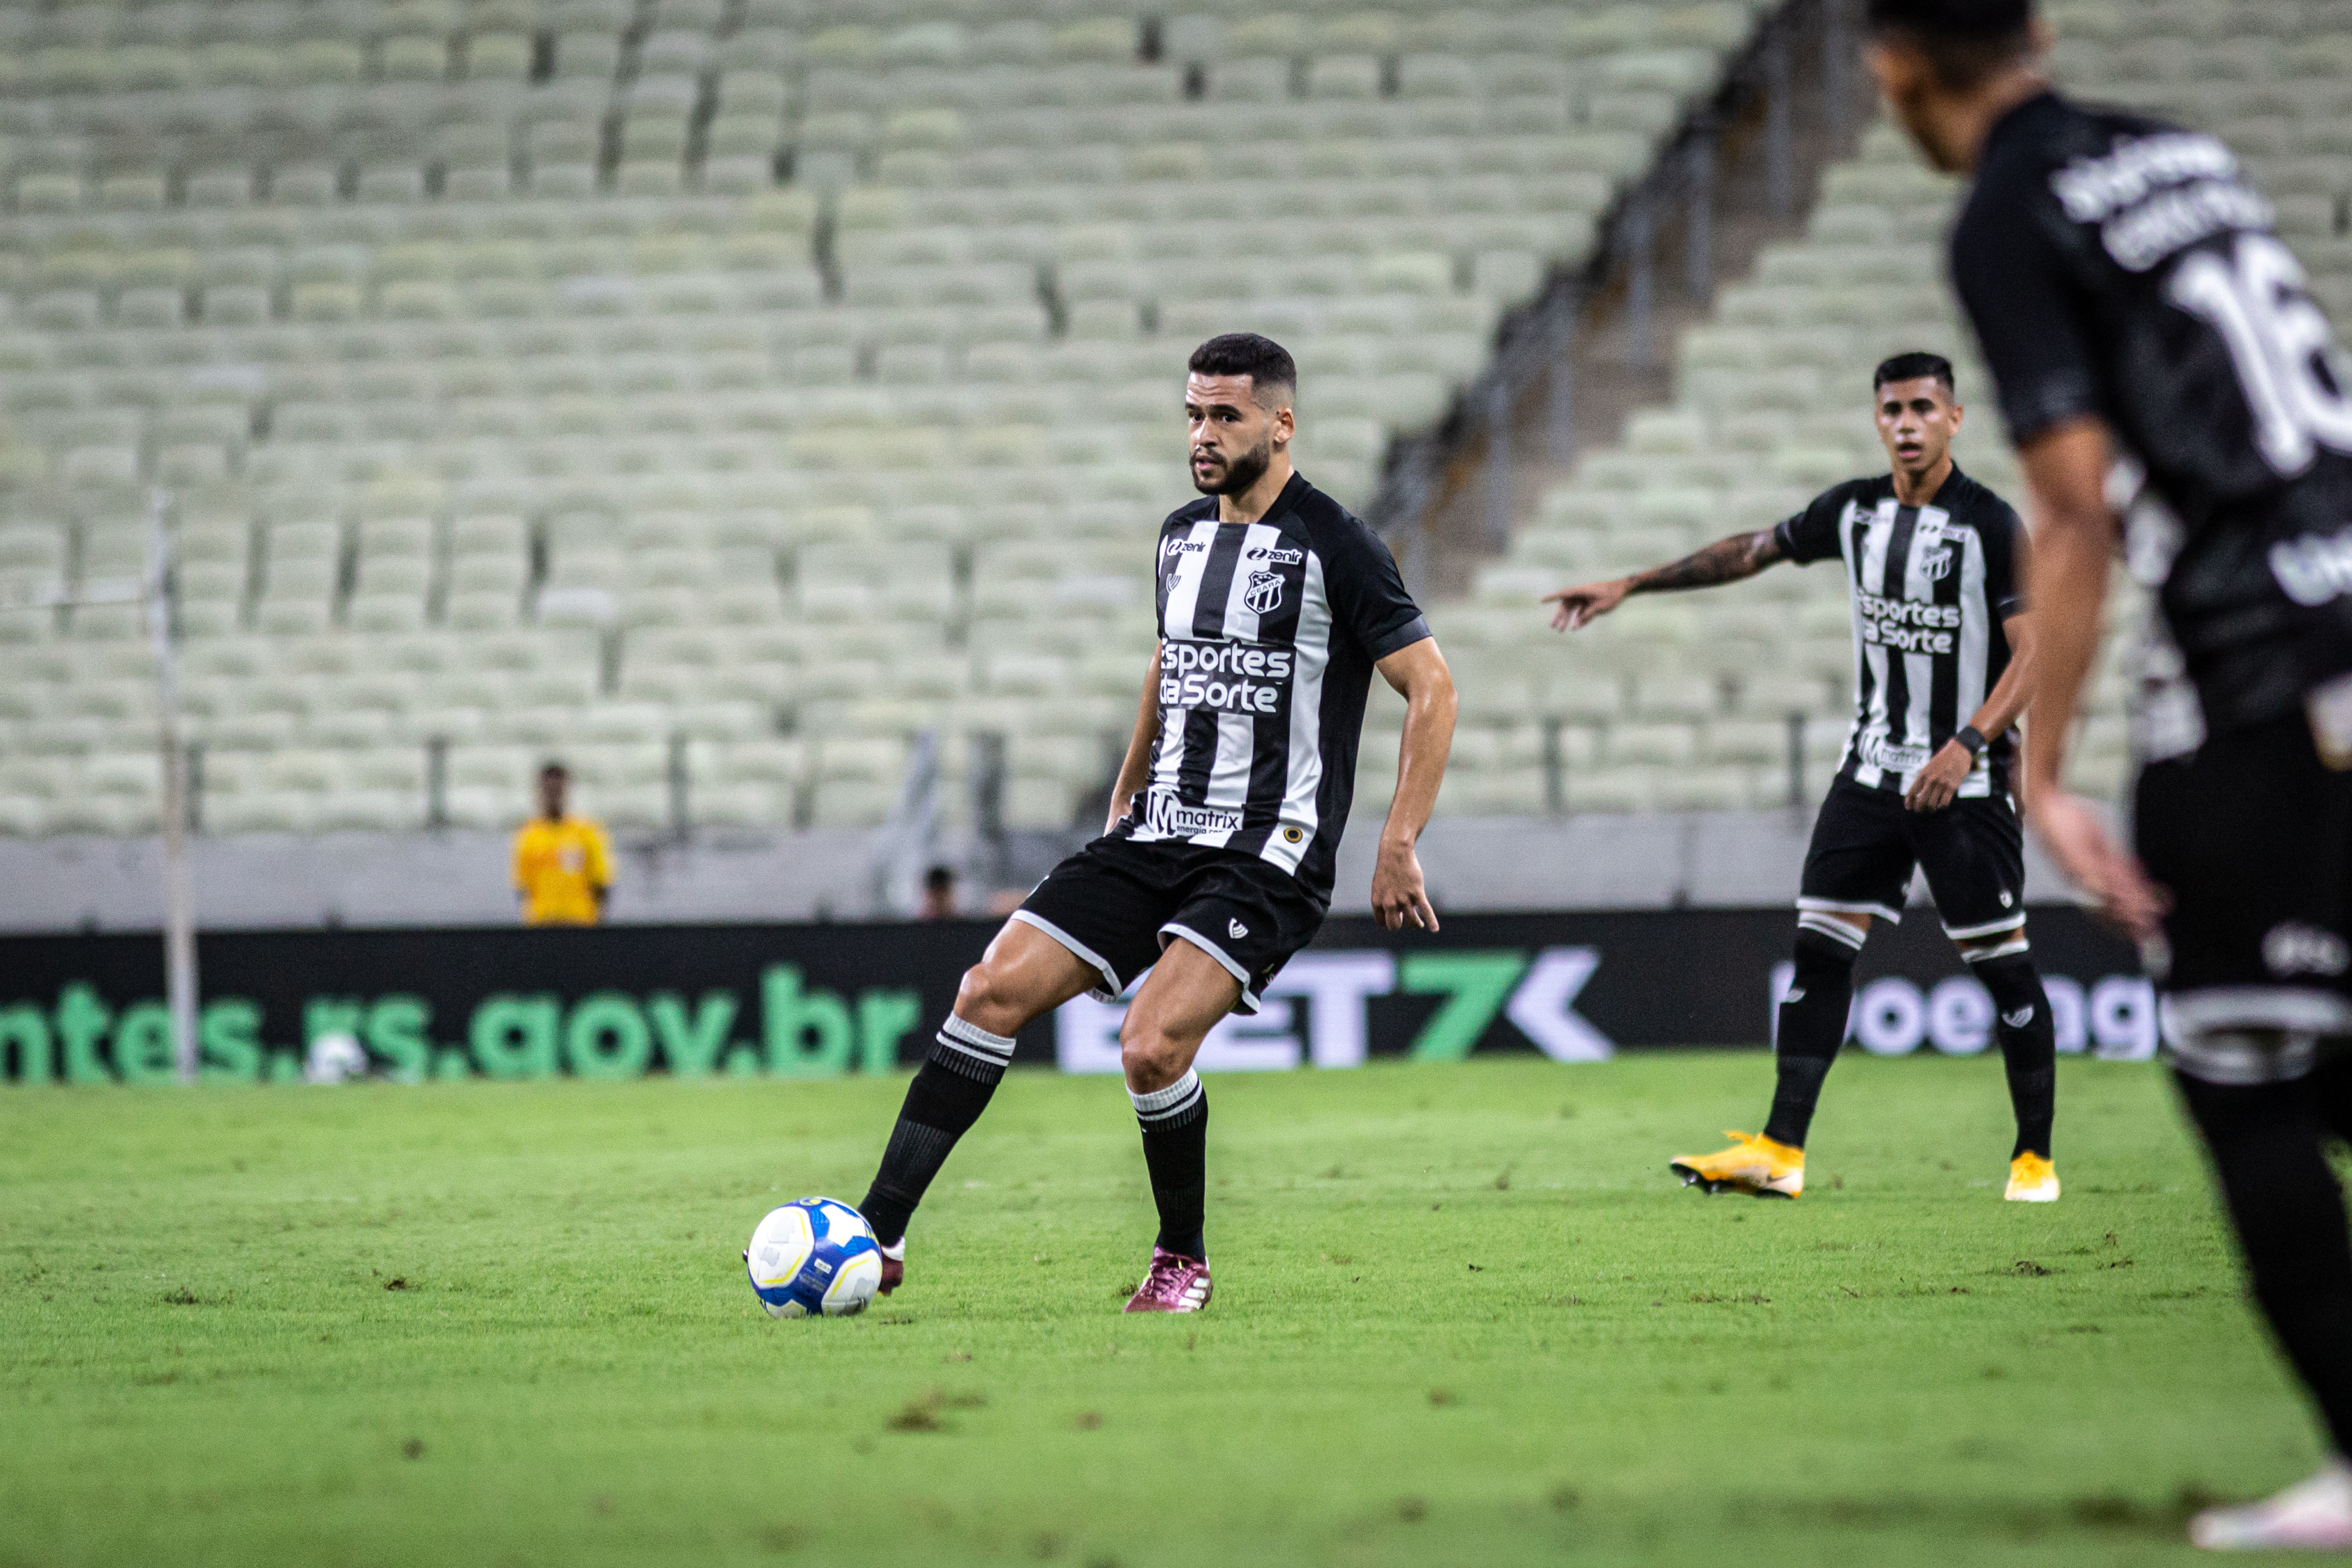 Na Arena Castelão, Ceará recebe o Botafogo/SP pela décima sétima rodada do Campeonato Brasileiro